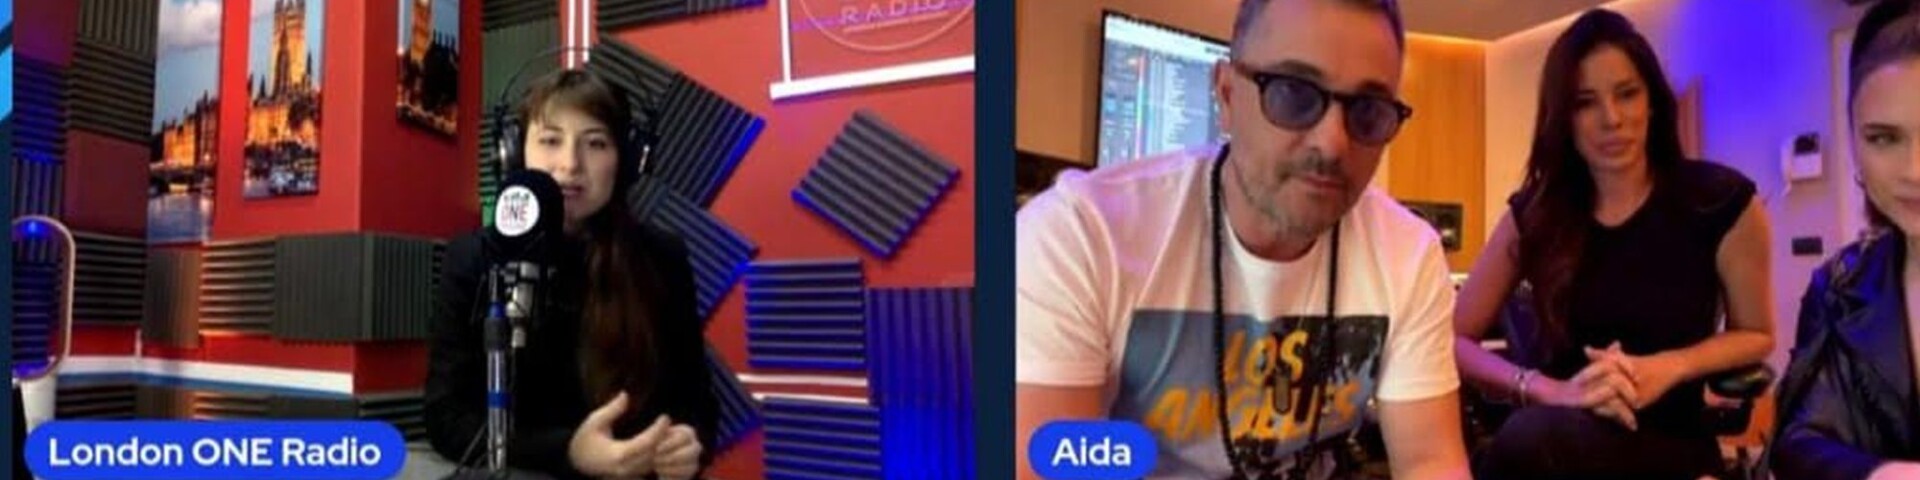 Esclusiva, Aida Yespica a London One Radio: “Debutto come cantante con il brano Bugatti”